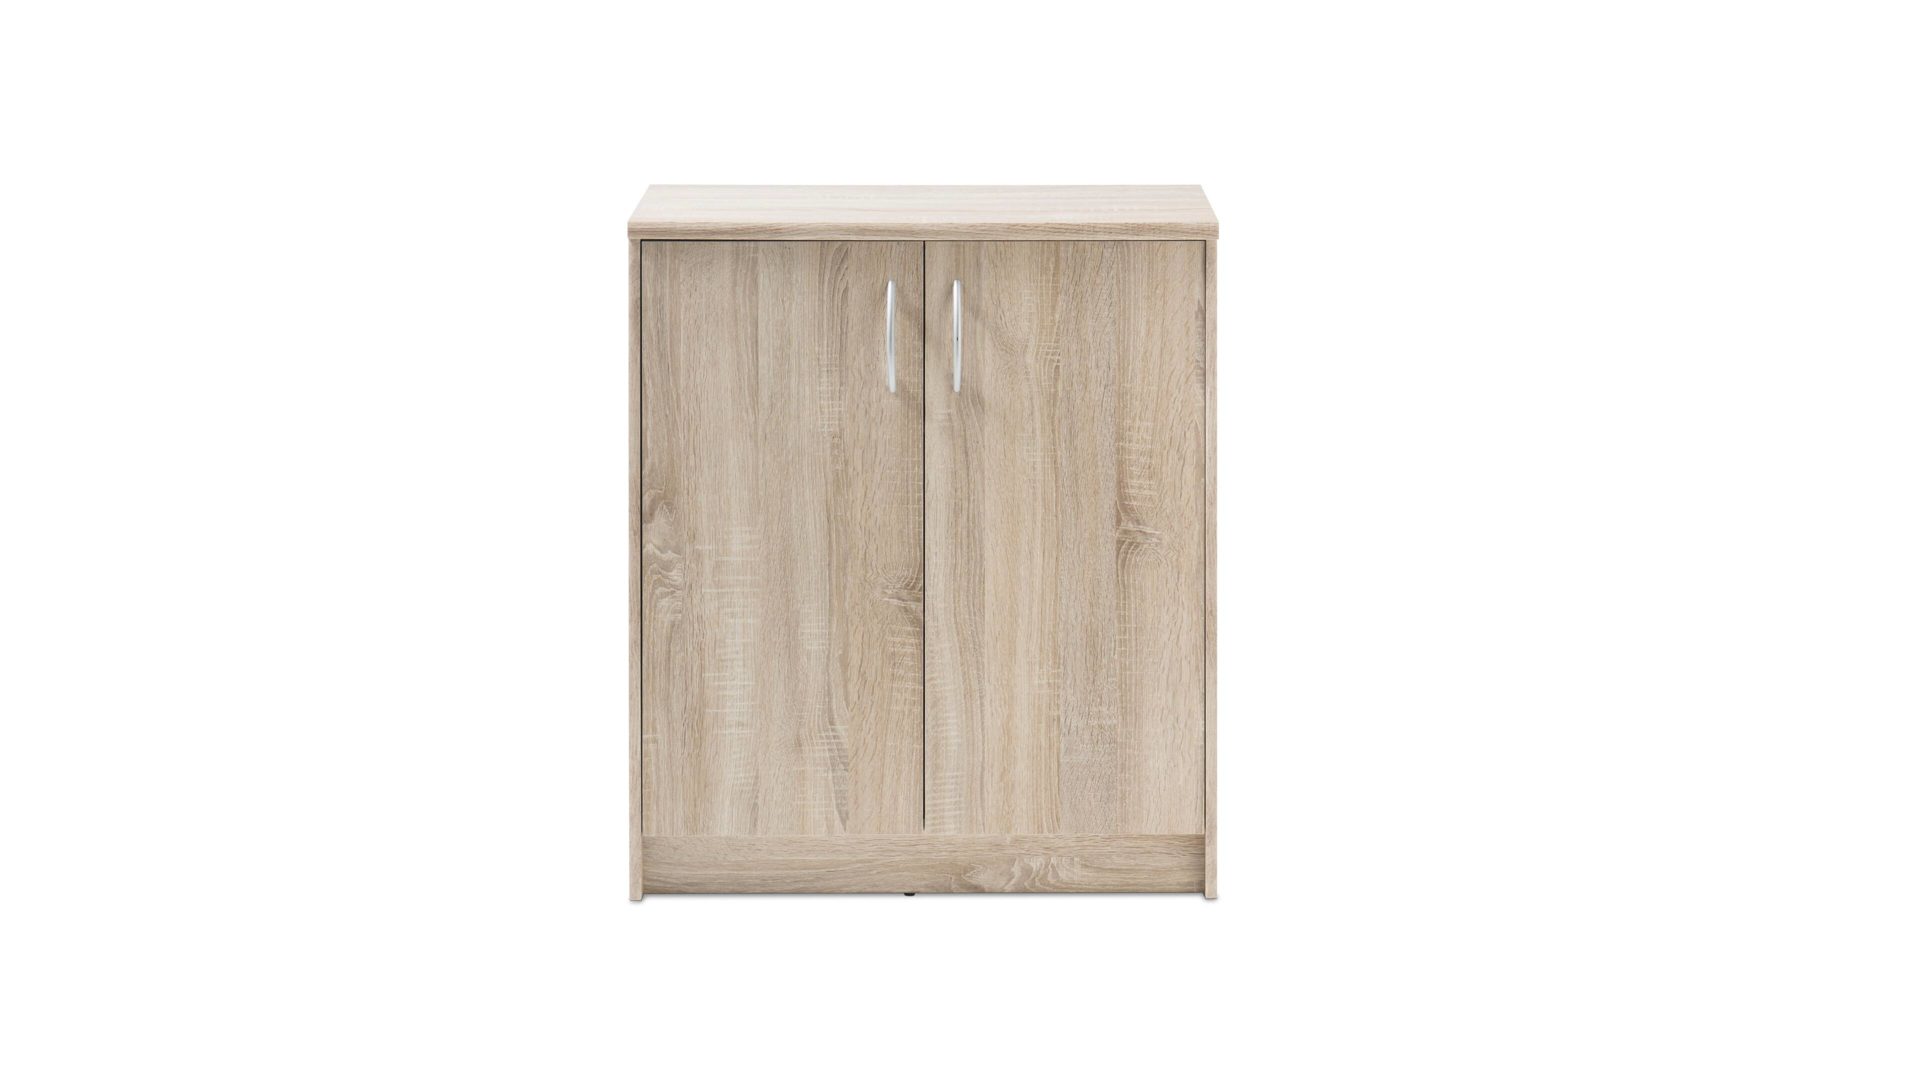 Türenkommode Bega consult aus Holz in Holzfarben Türenkommode bzw. Schrank Sonoma eichefarbene Kunststoffoberflächen – zwei Türen